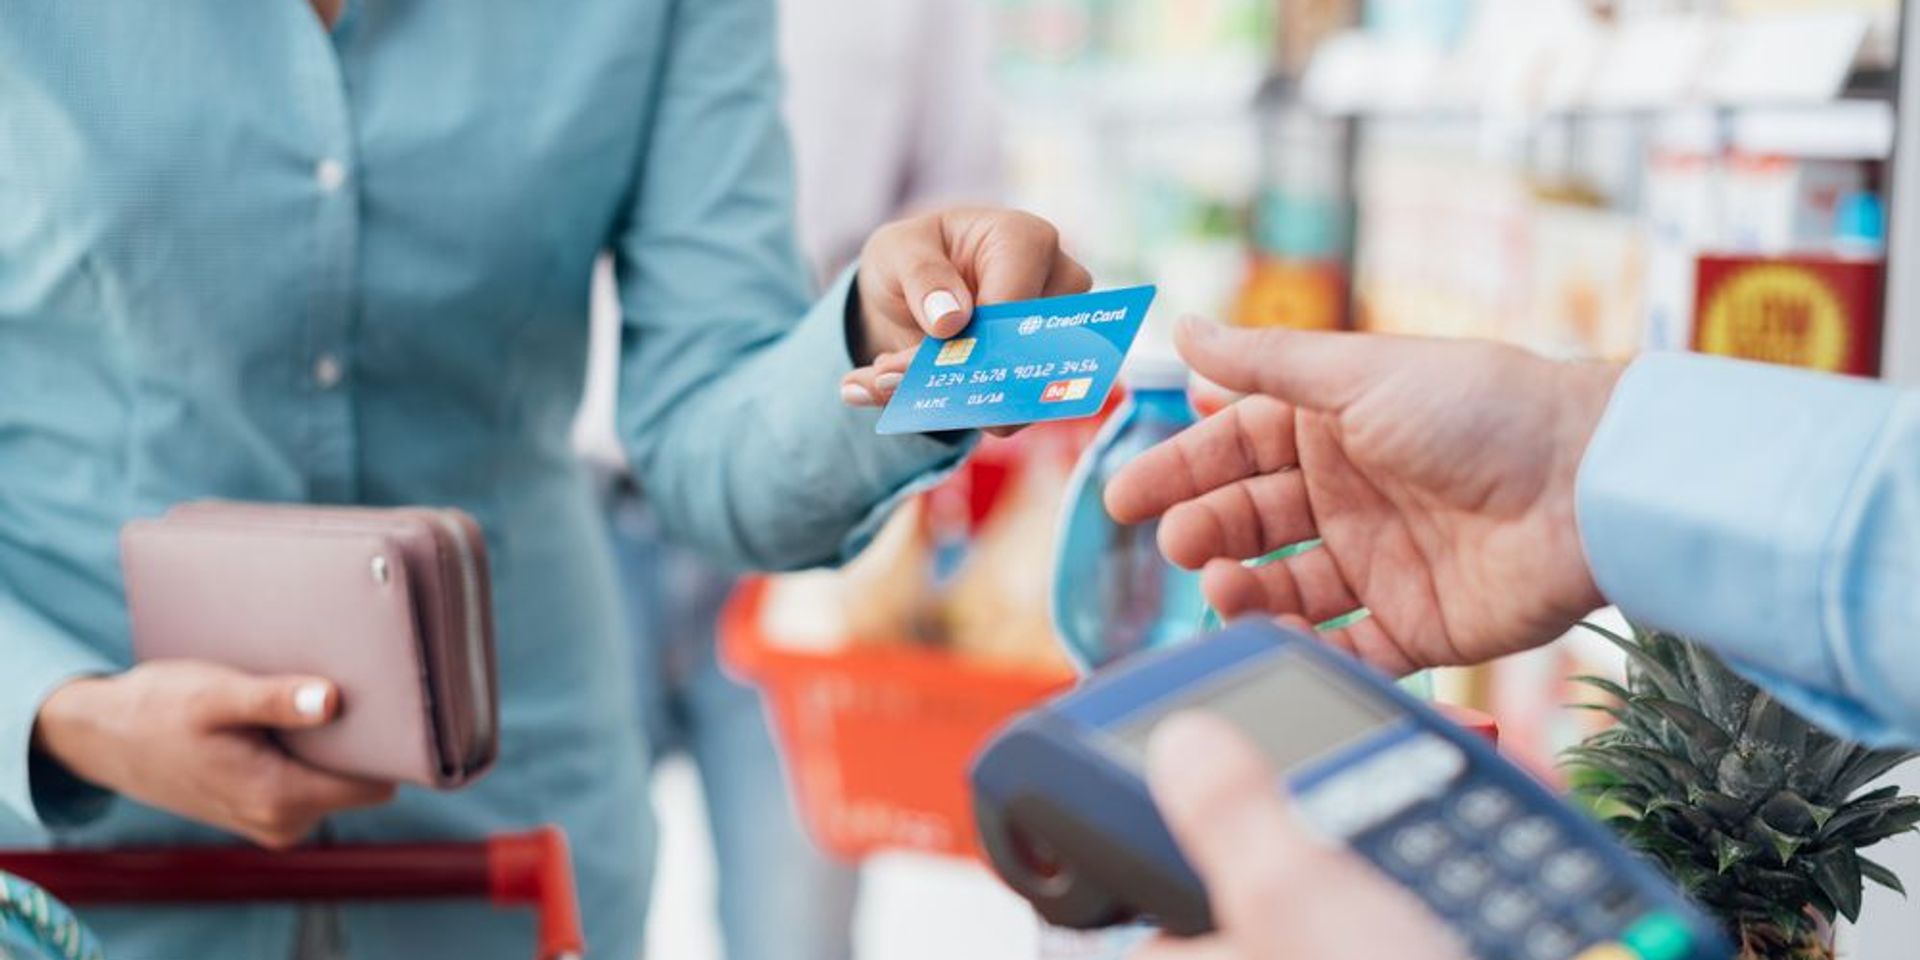 Így fizessünk bankkártyával külföldi nyaraláskor